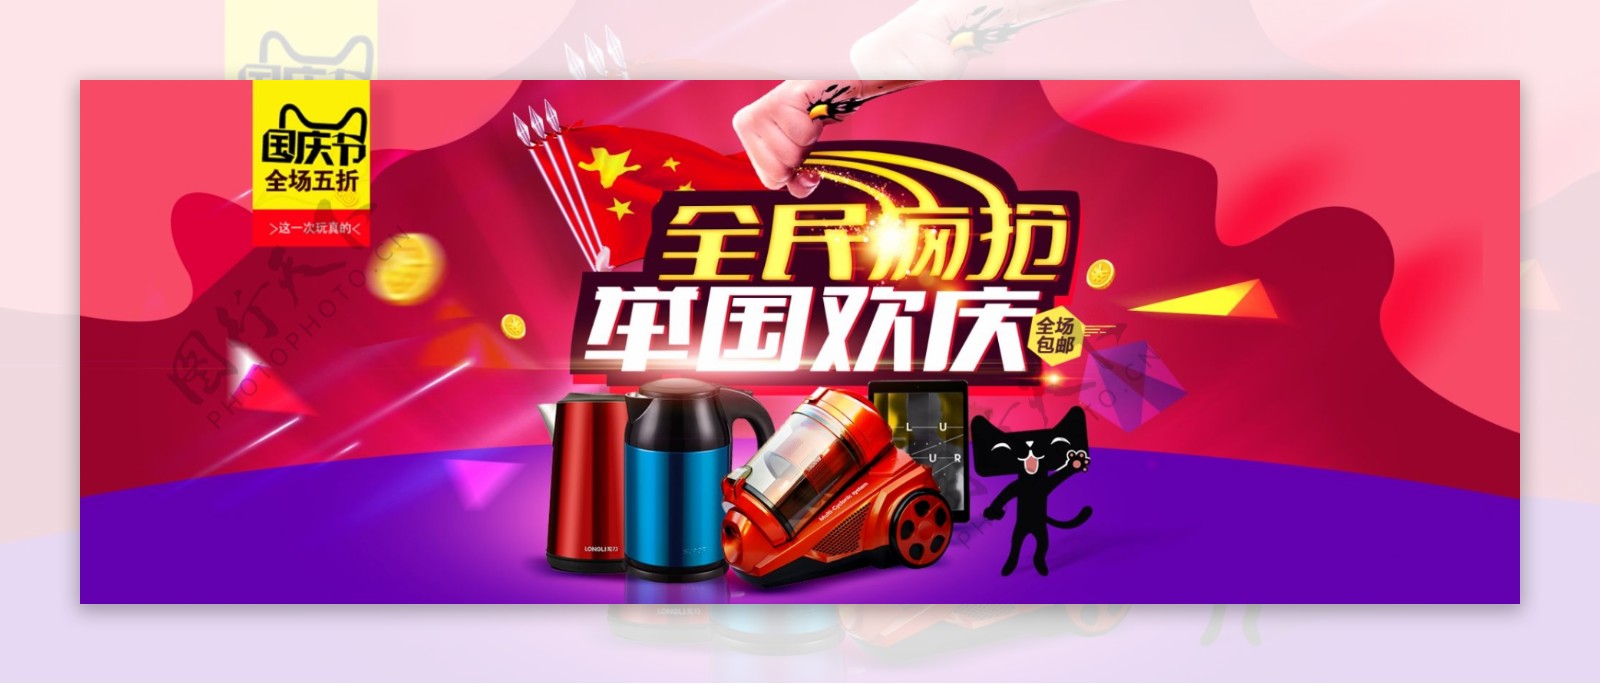 淘宝天猫国庆节促销全屏海报设计模板